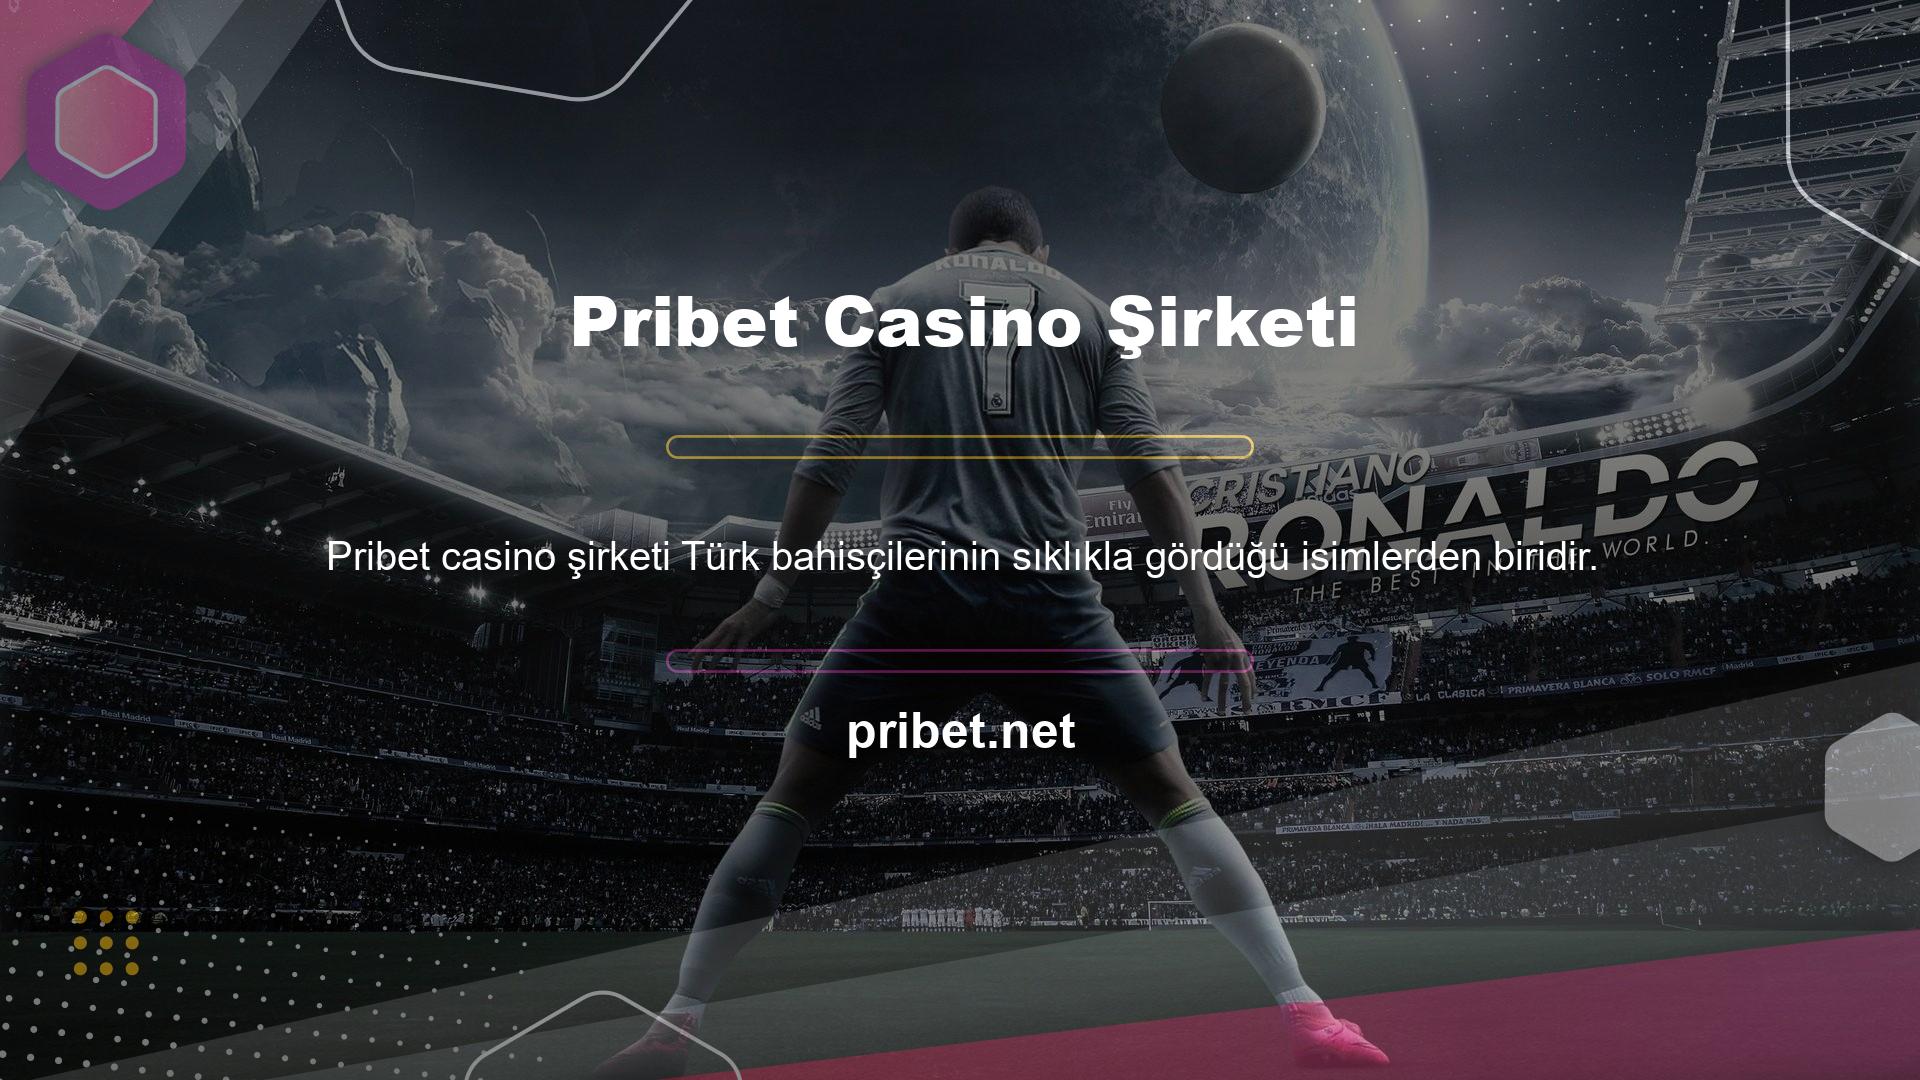 Site, çok çeşitli ortak spor ve casino oyunları sunar ve kullanımı kolaydır